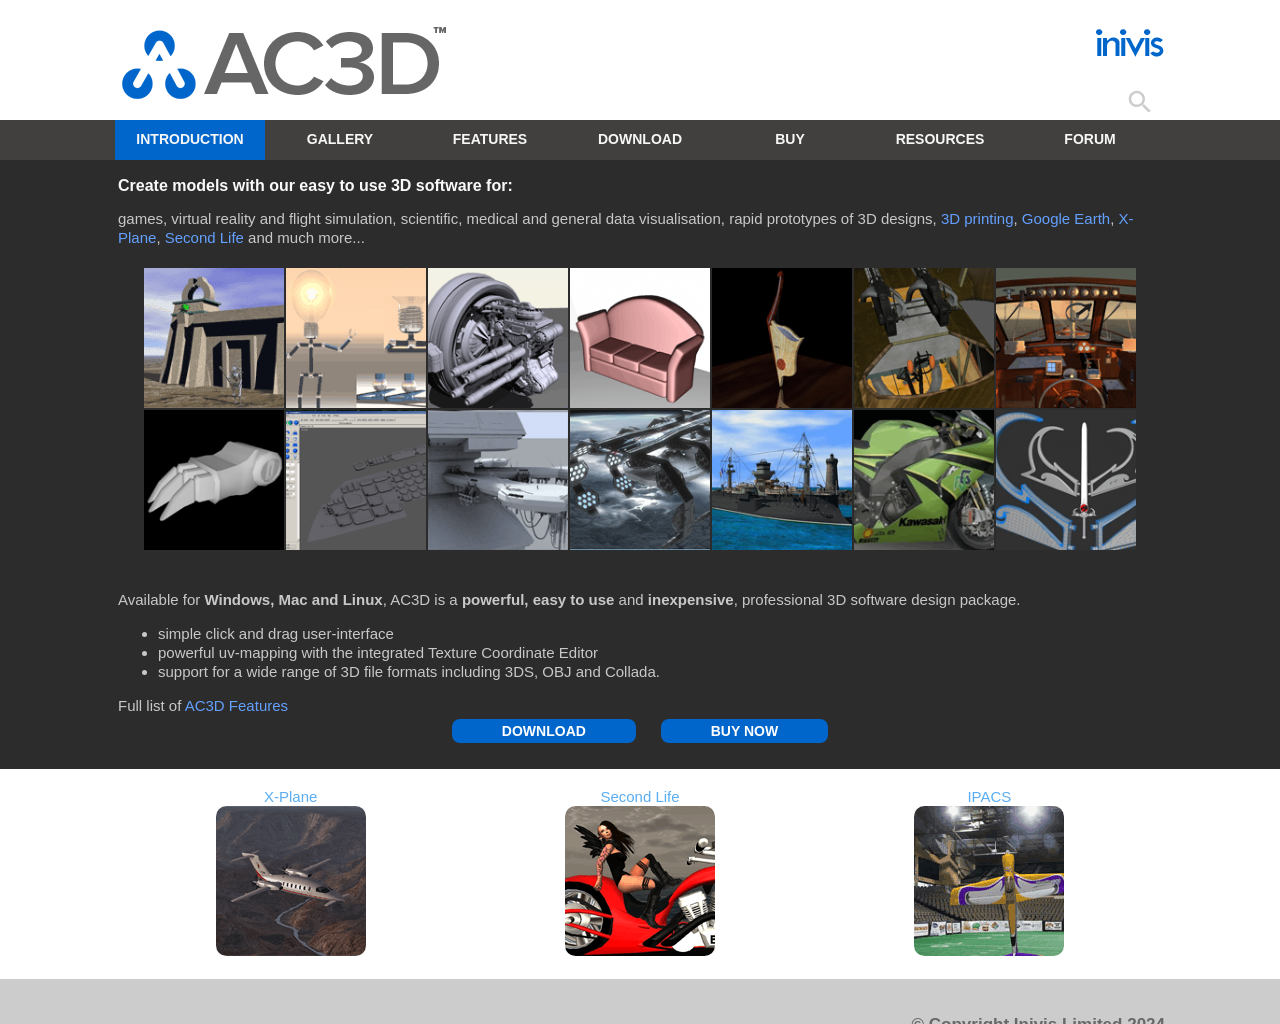 ac3d.org